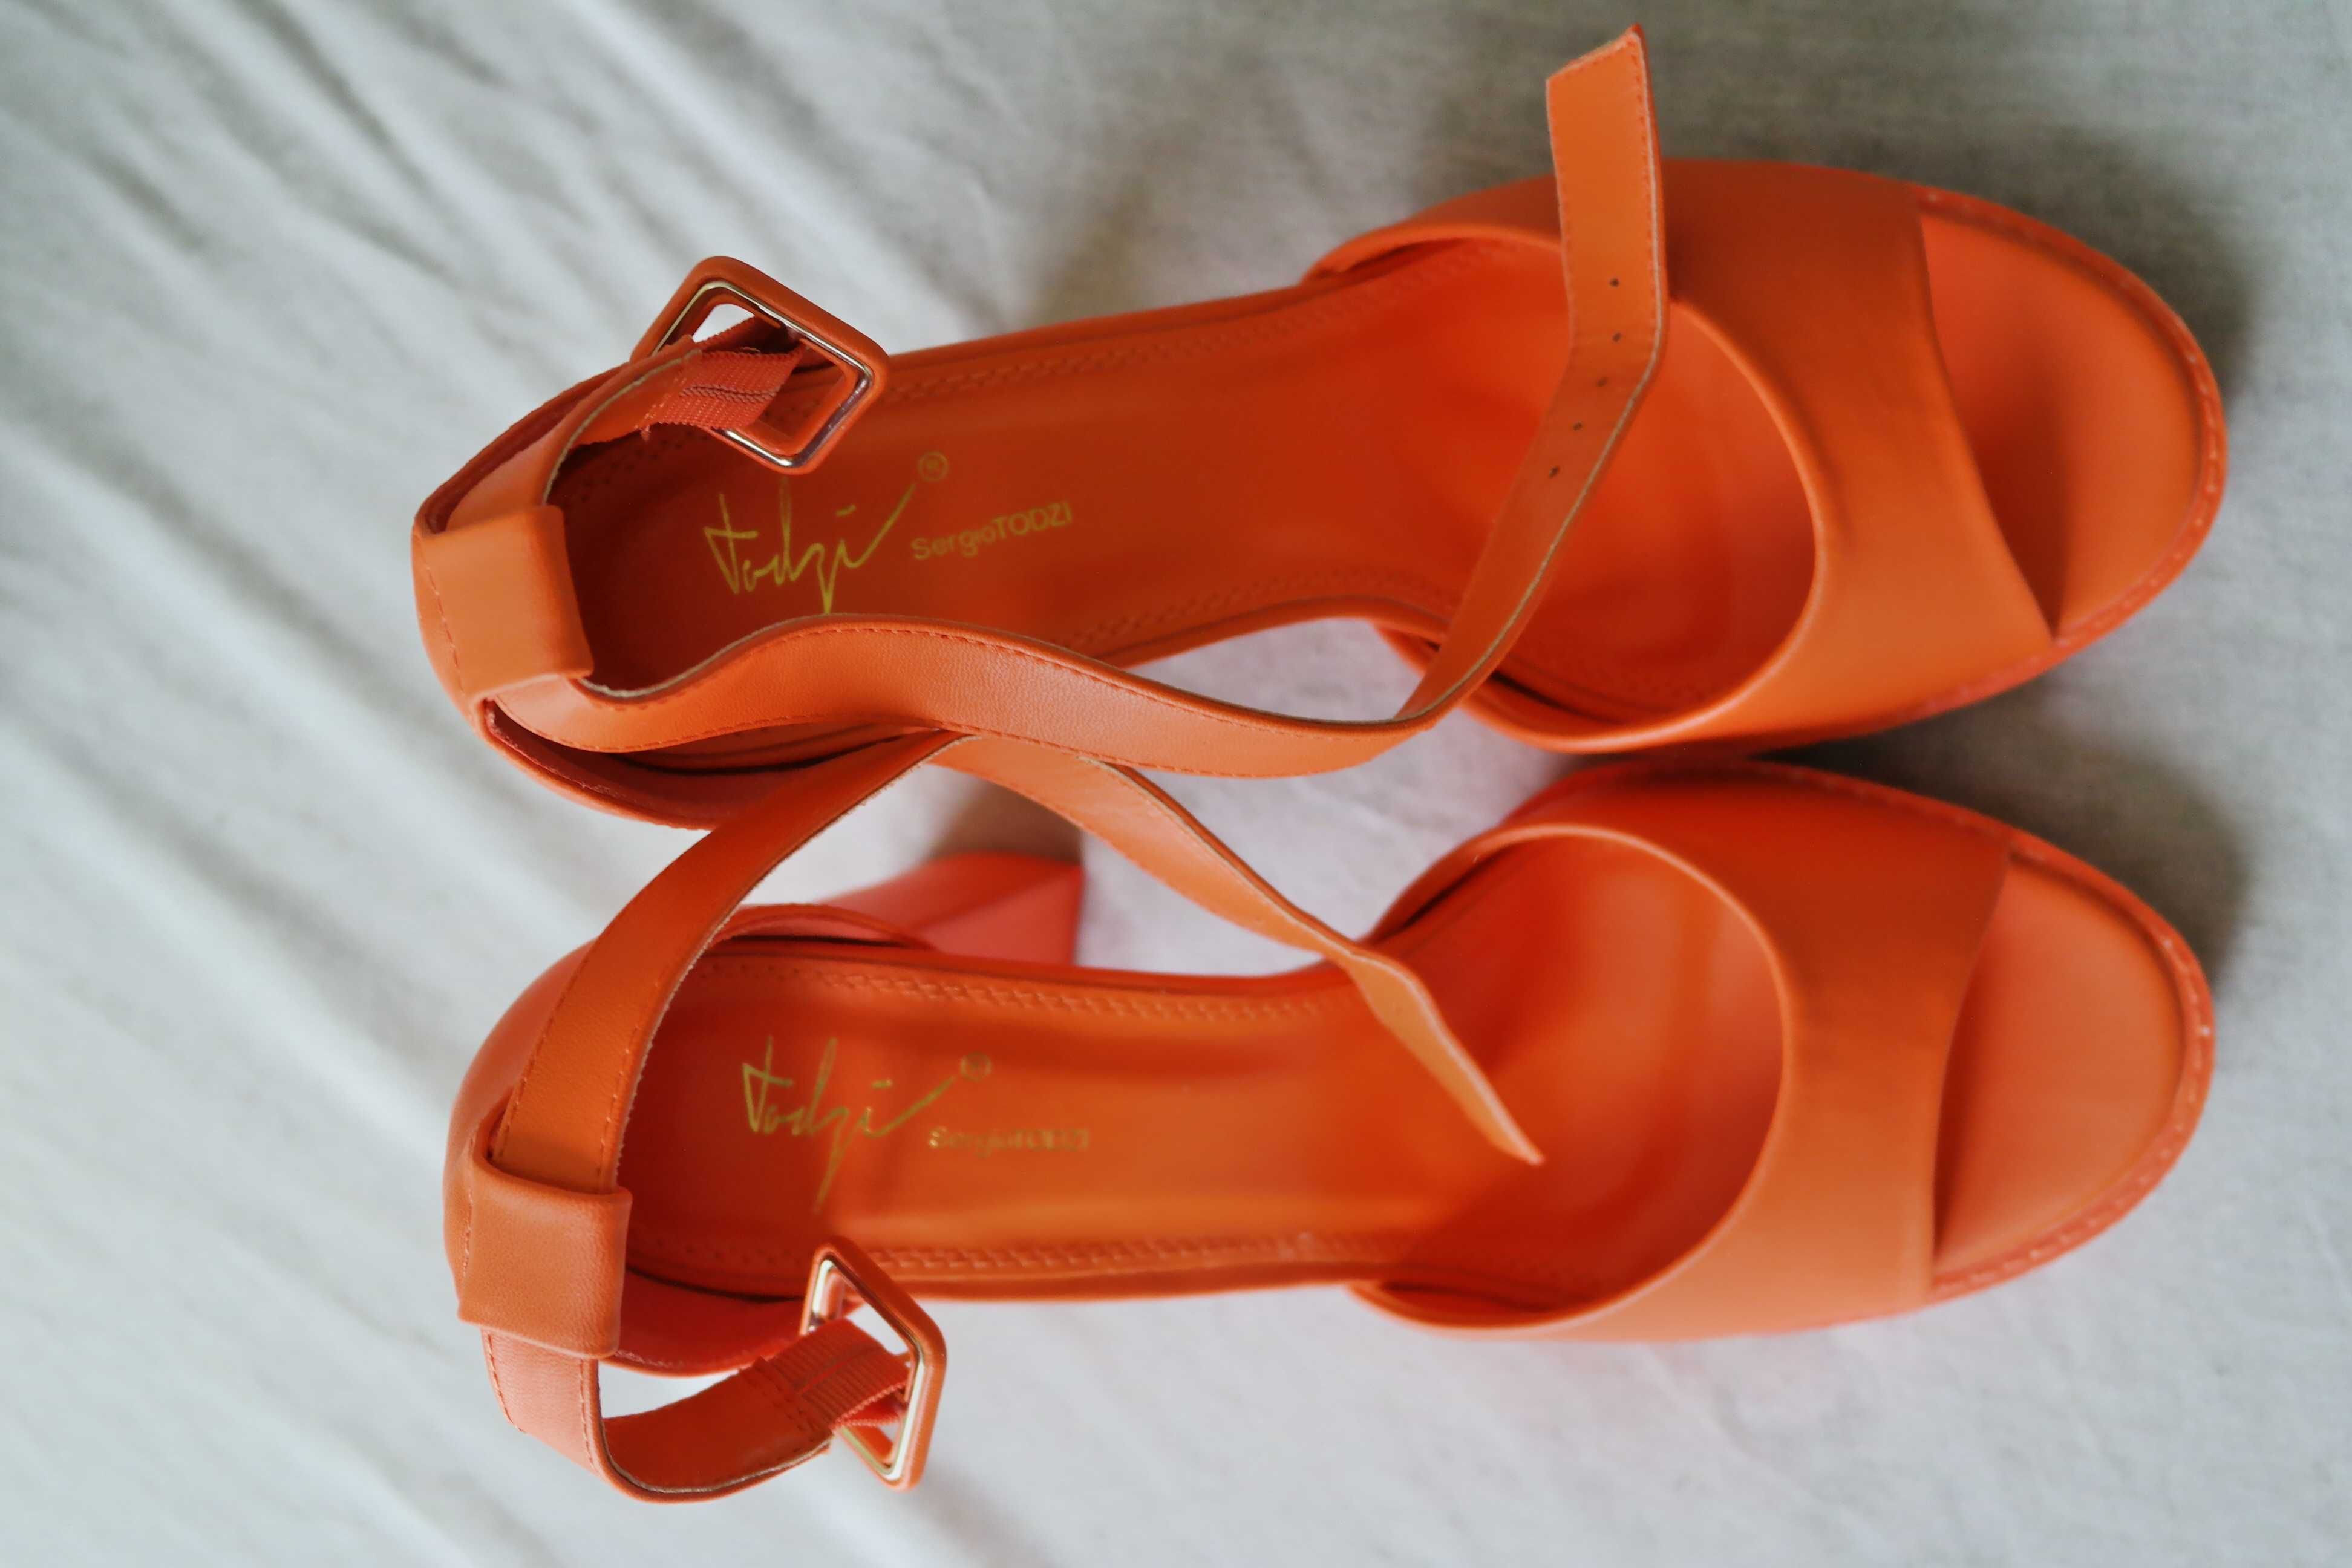 Sandale de vara cu toc galben pai/portocalii